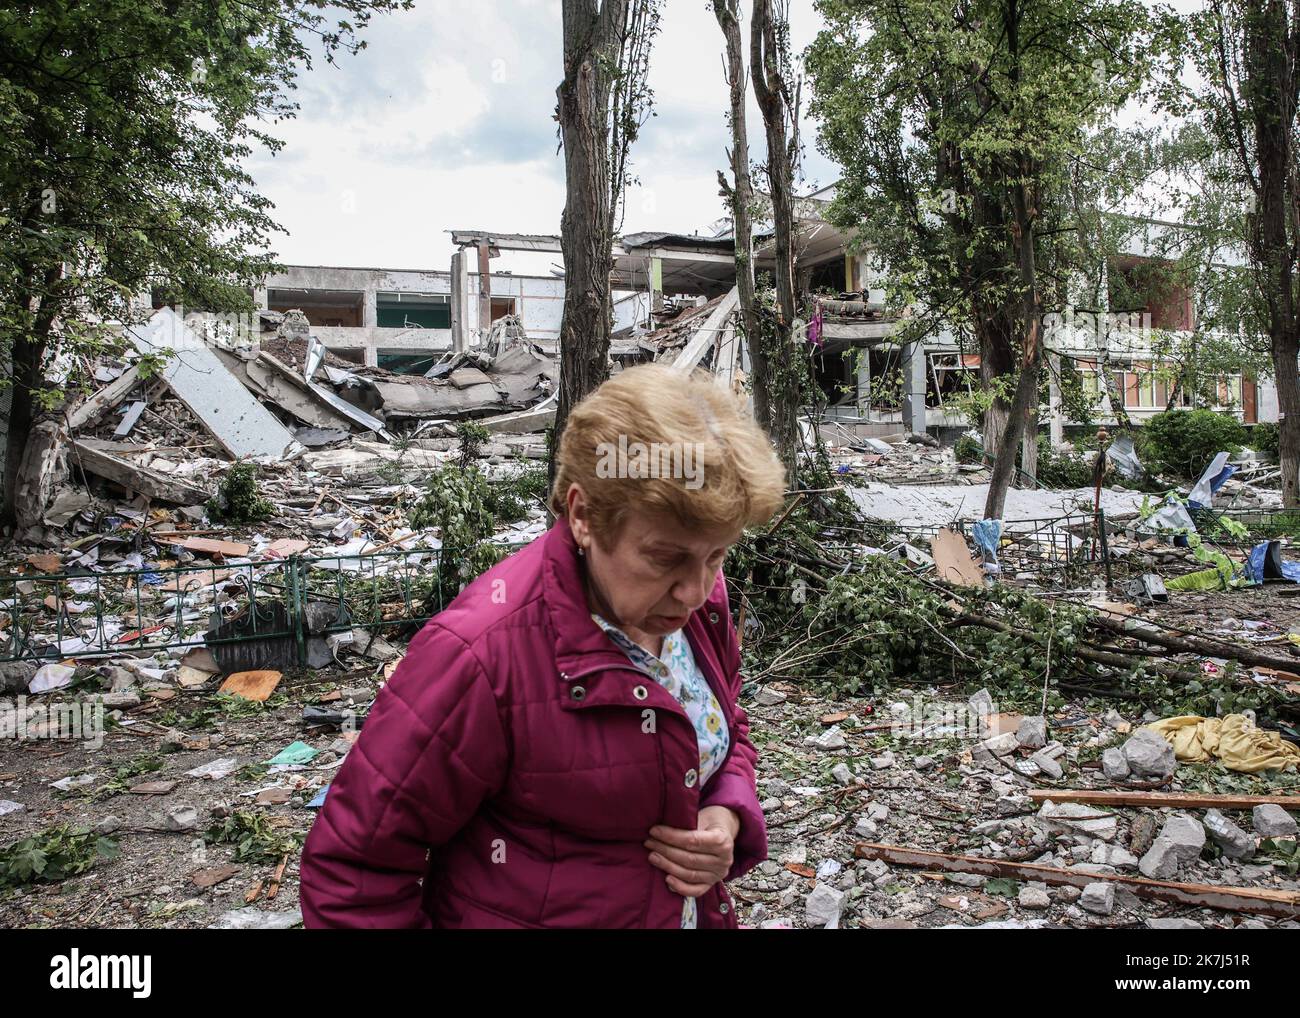 ©Sadak Souici / Le Pictorium/MAXPPP - Kharkiv 02/06/2022 Sadak Souici / Le Pictorium - 2/6/2022 - Ukraine / Kharkiv - Dans la matinee du 2 juin, une ecole primaire a ete bombarde par les force russe dans le nord de Karkiv pres du distric de Saltika. Le bilan est d'un mort, la gardienne de l'ecole. / 2/6/2022 - Ukraine / Kharkiv - In the morning of June 2, a primary school was shelled by Russian forces in the north of Karkiv near Saltika district. The death toll was one, the school's janitor. Stock Photo